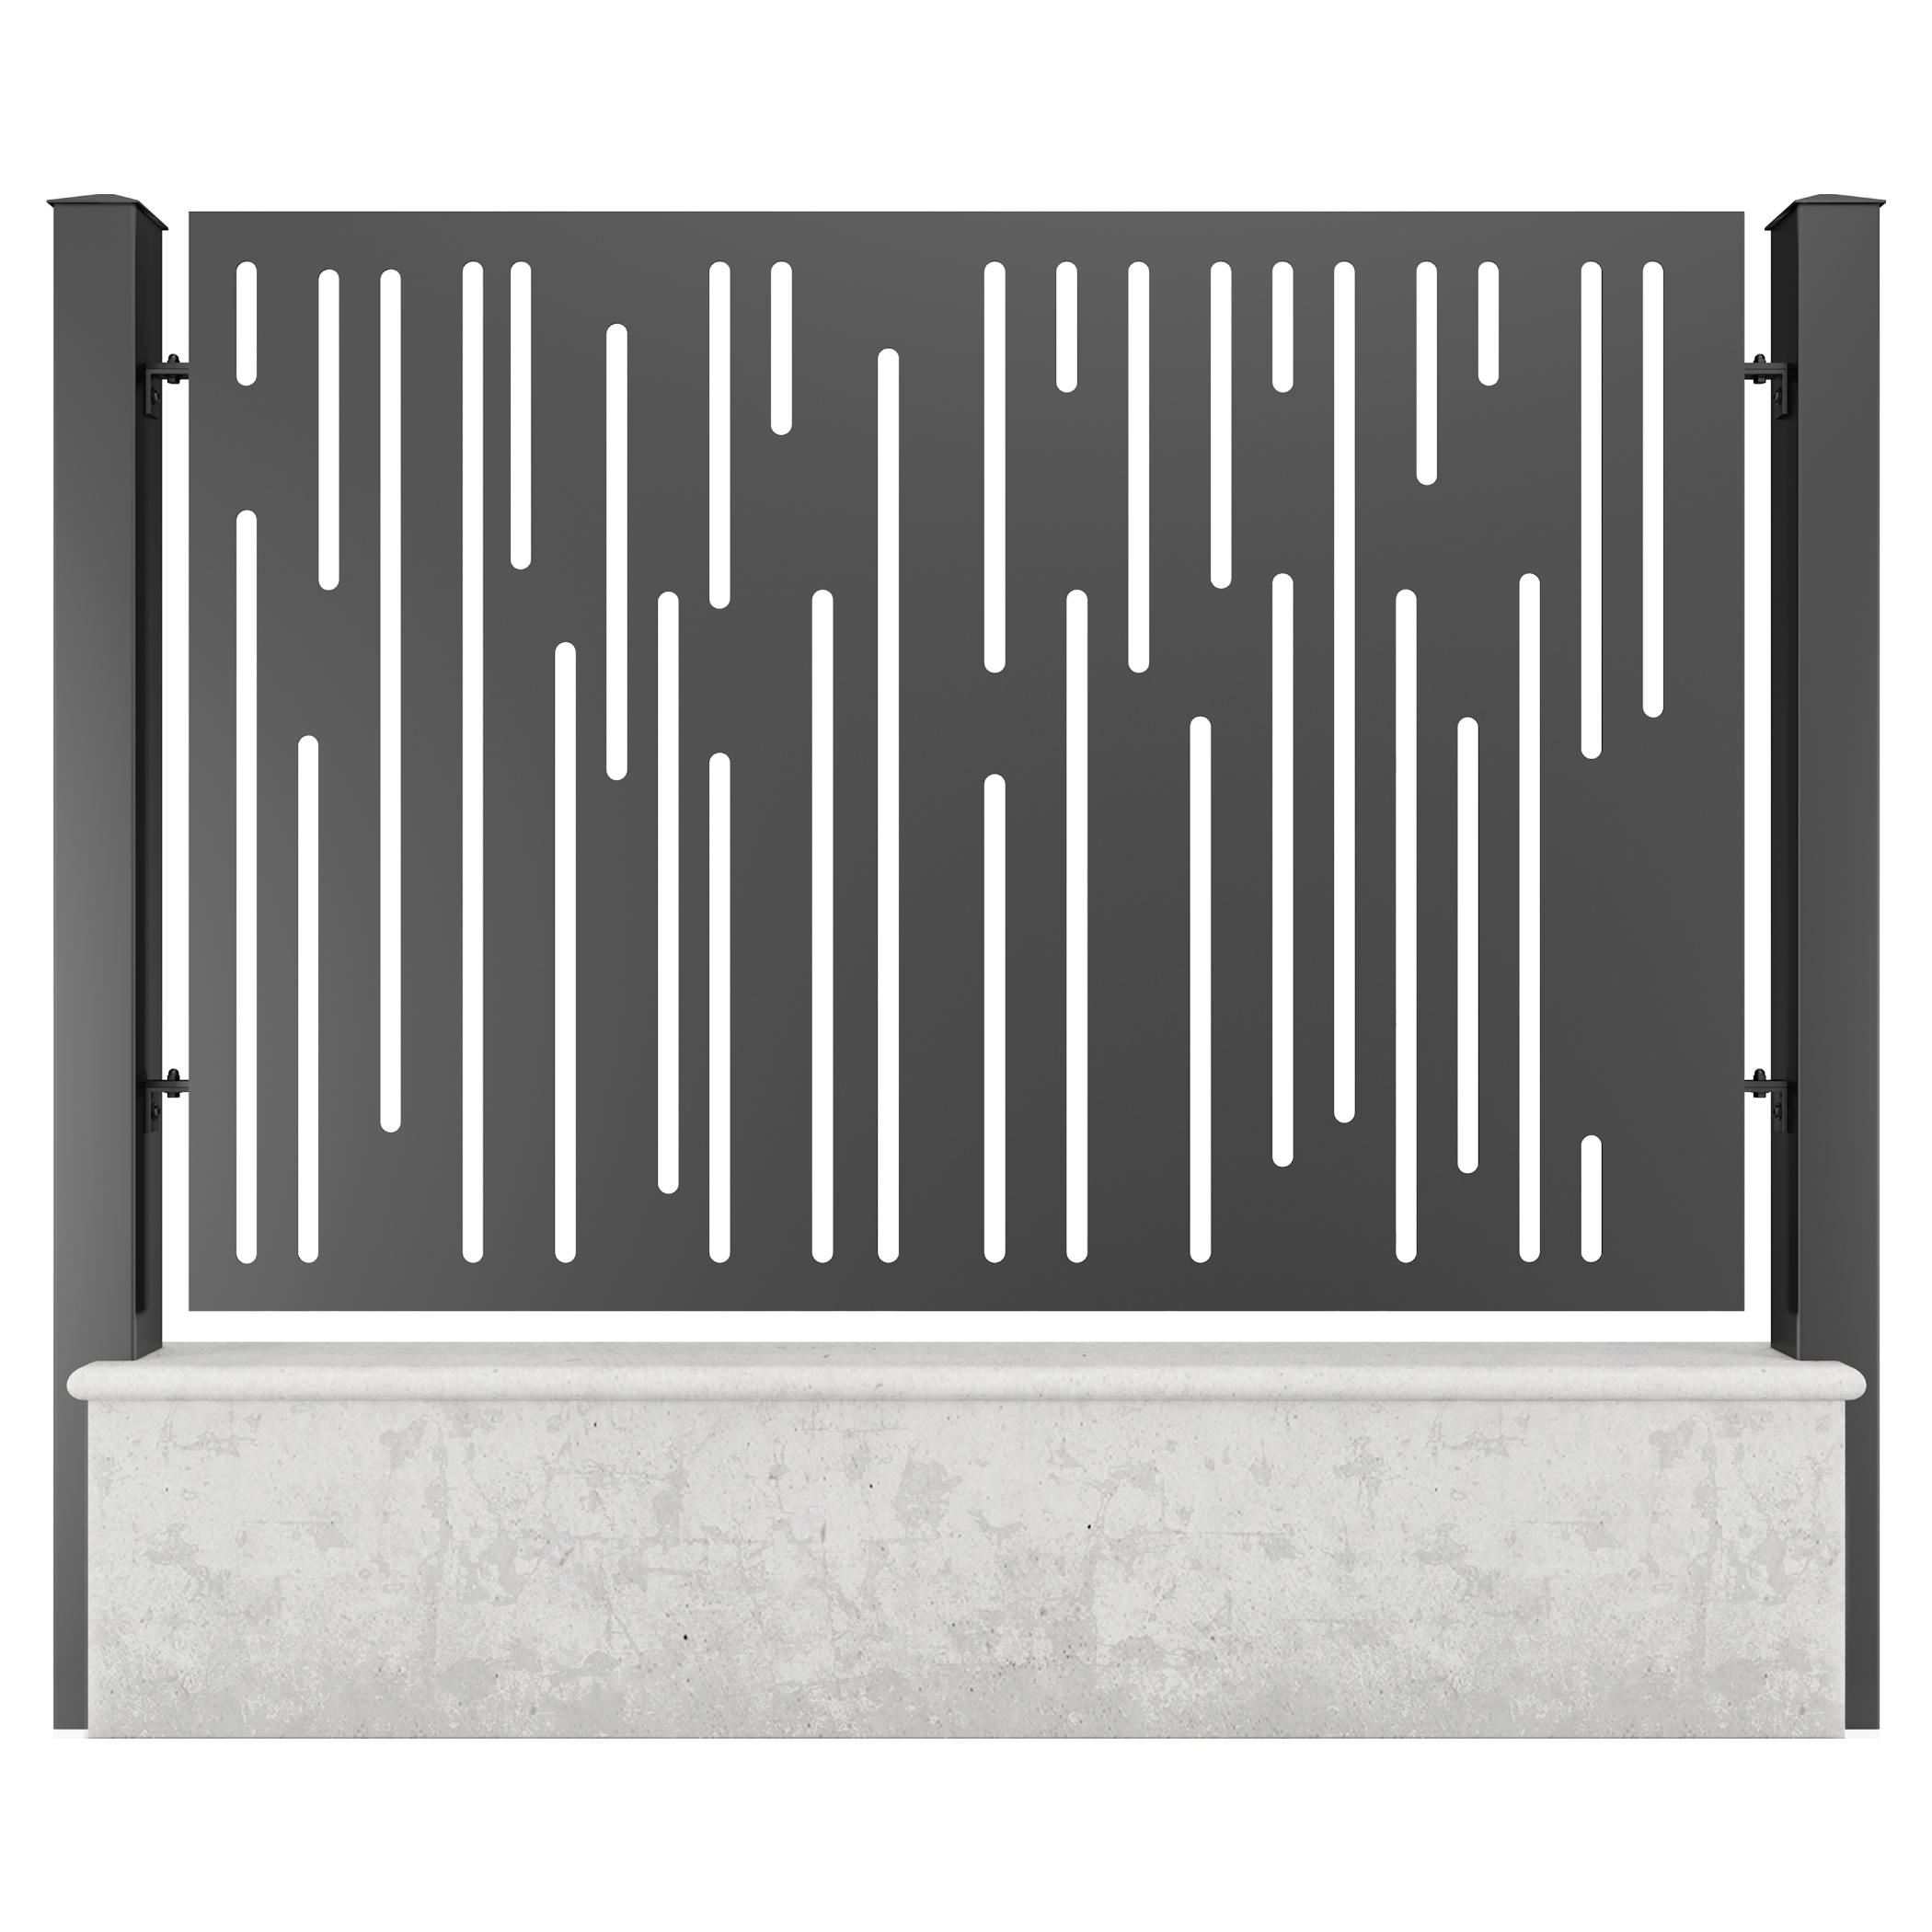 Panou gard aluminiu, din tabla decupata, G32B, negru (RAL 9005), 2000 x 1500 mm